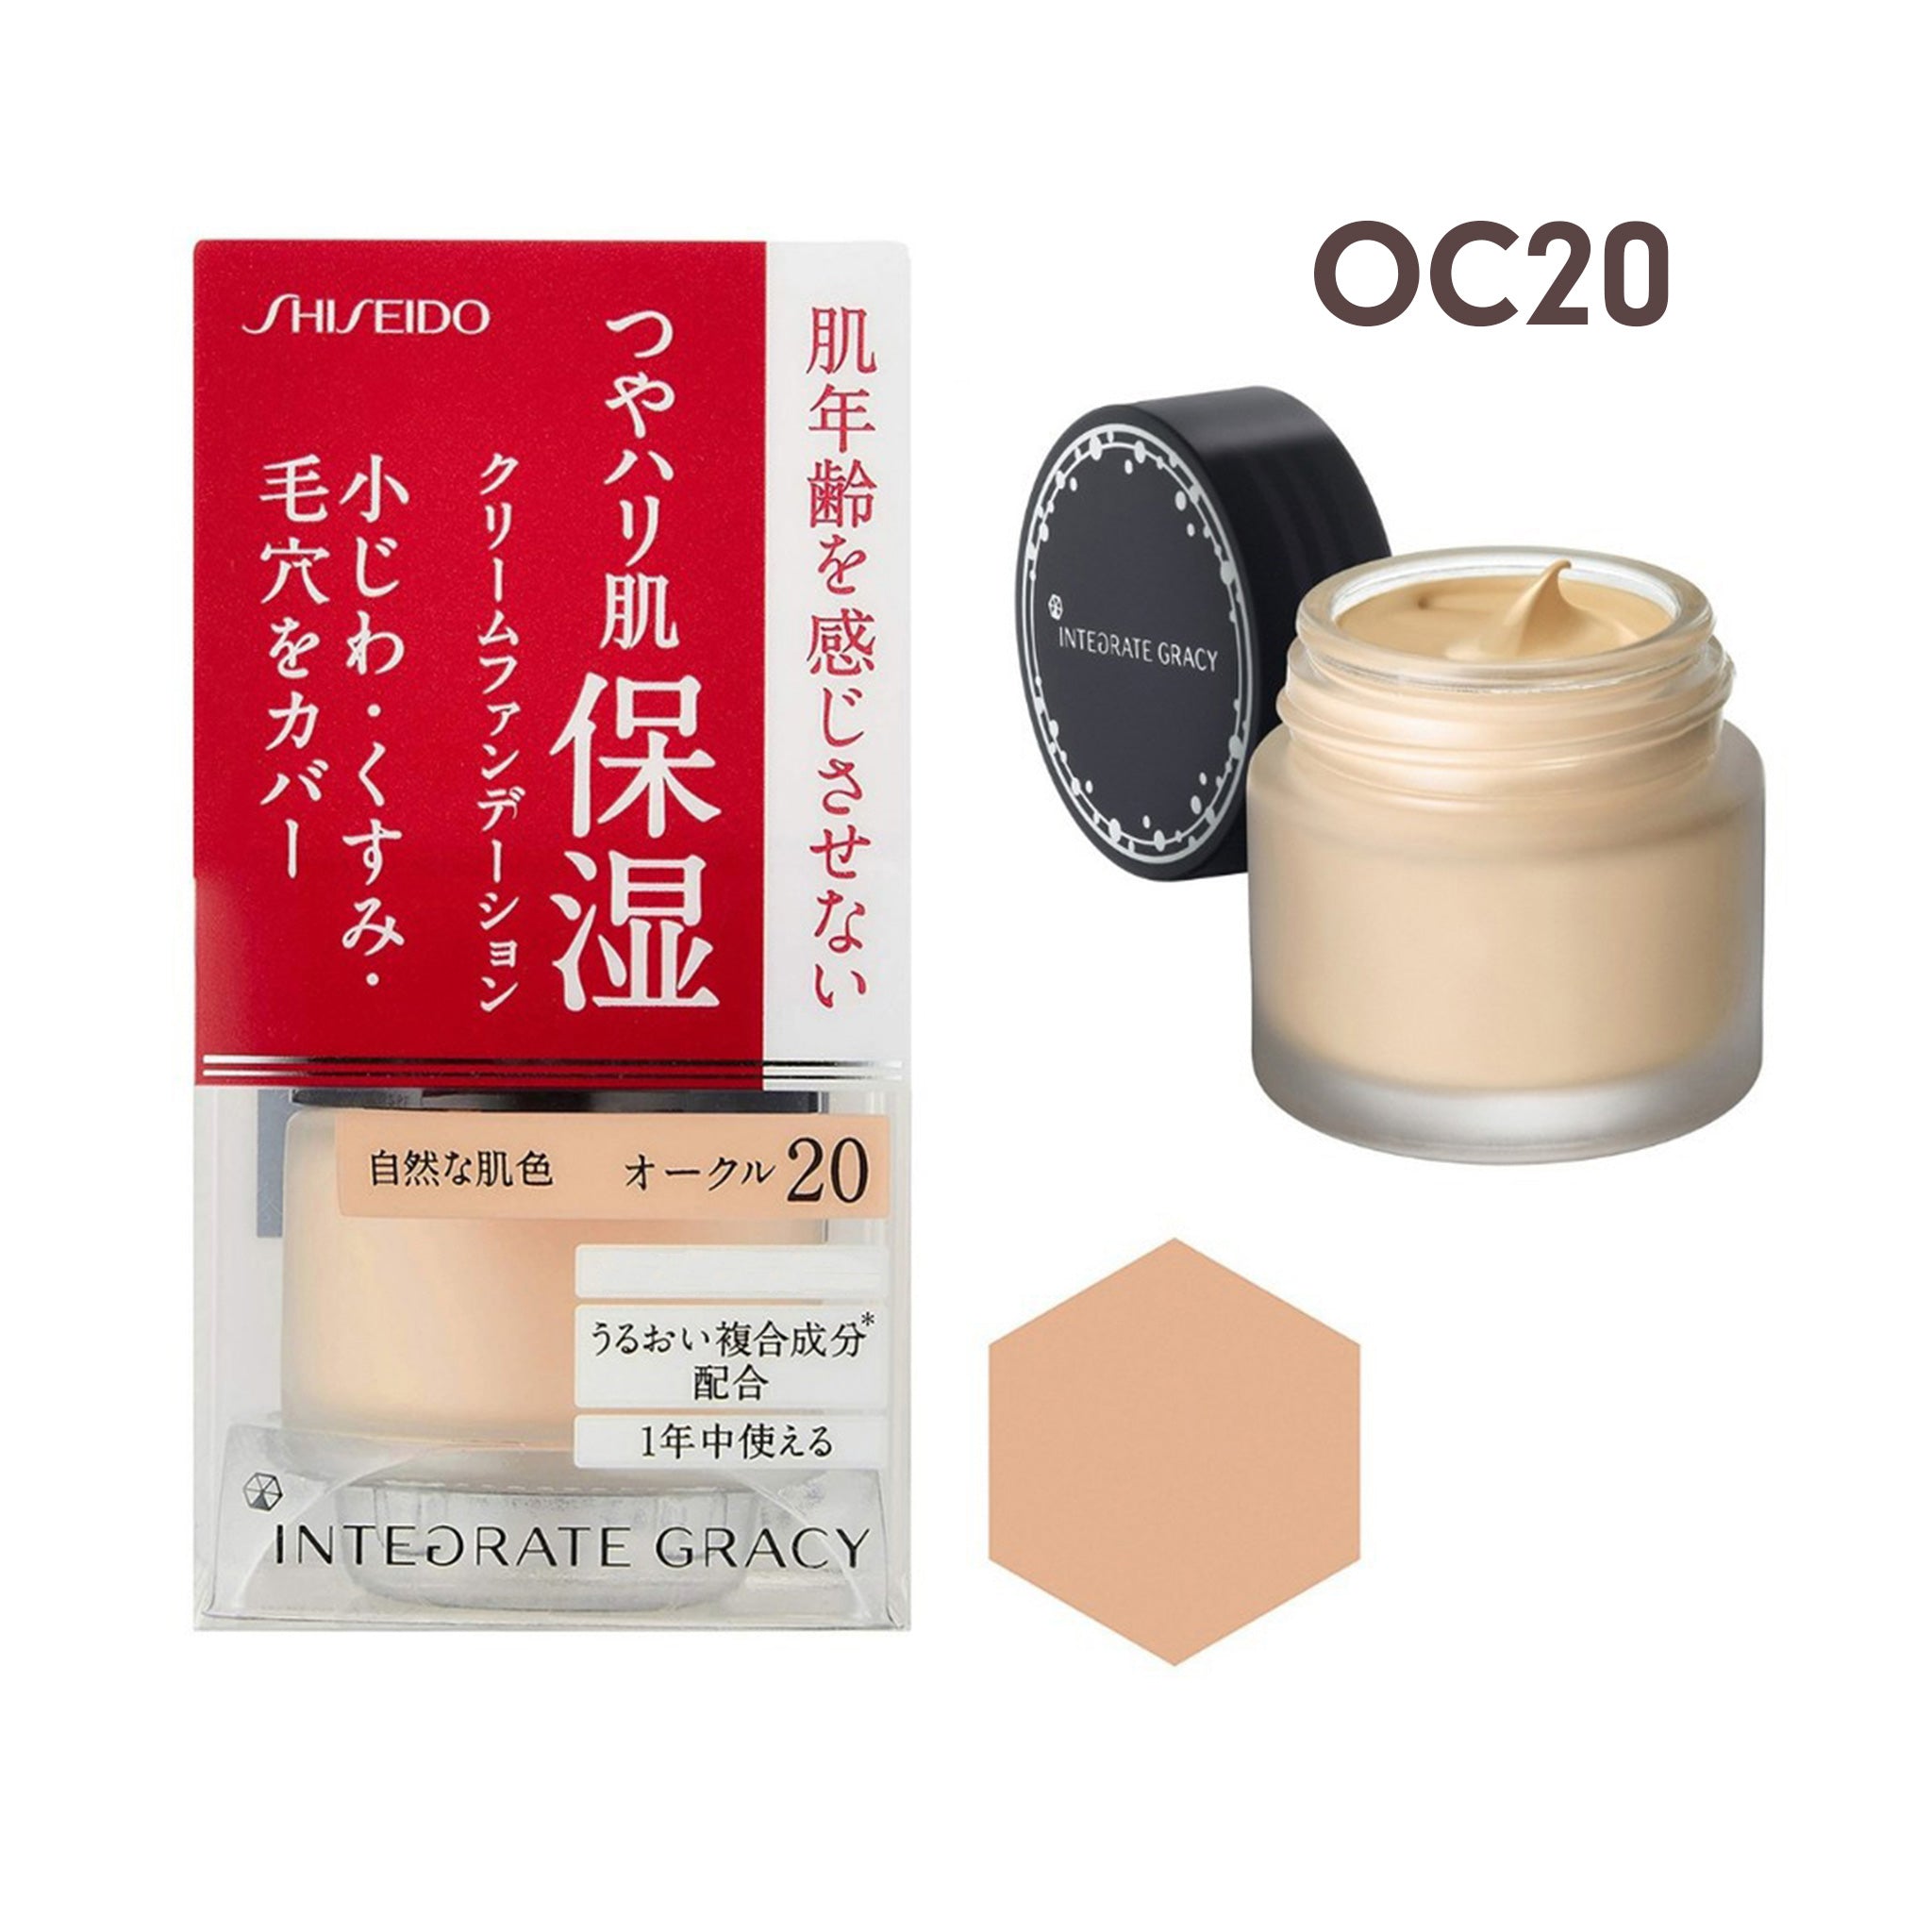 SHISEIDO Integrate Gracy Moist Cream Foundation 25g